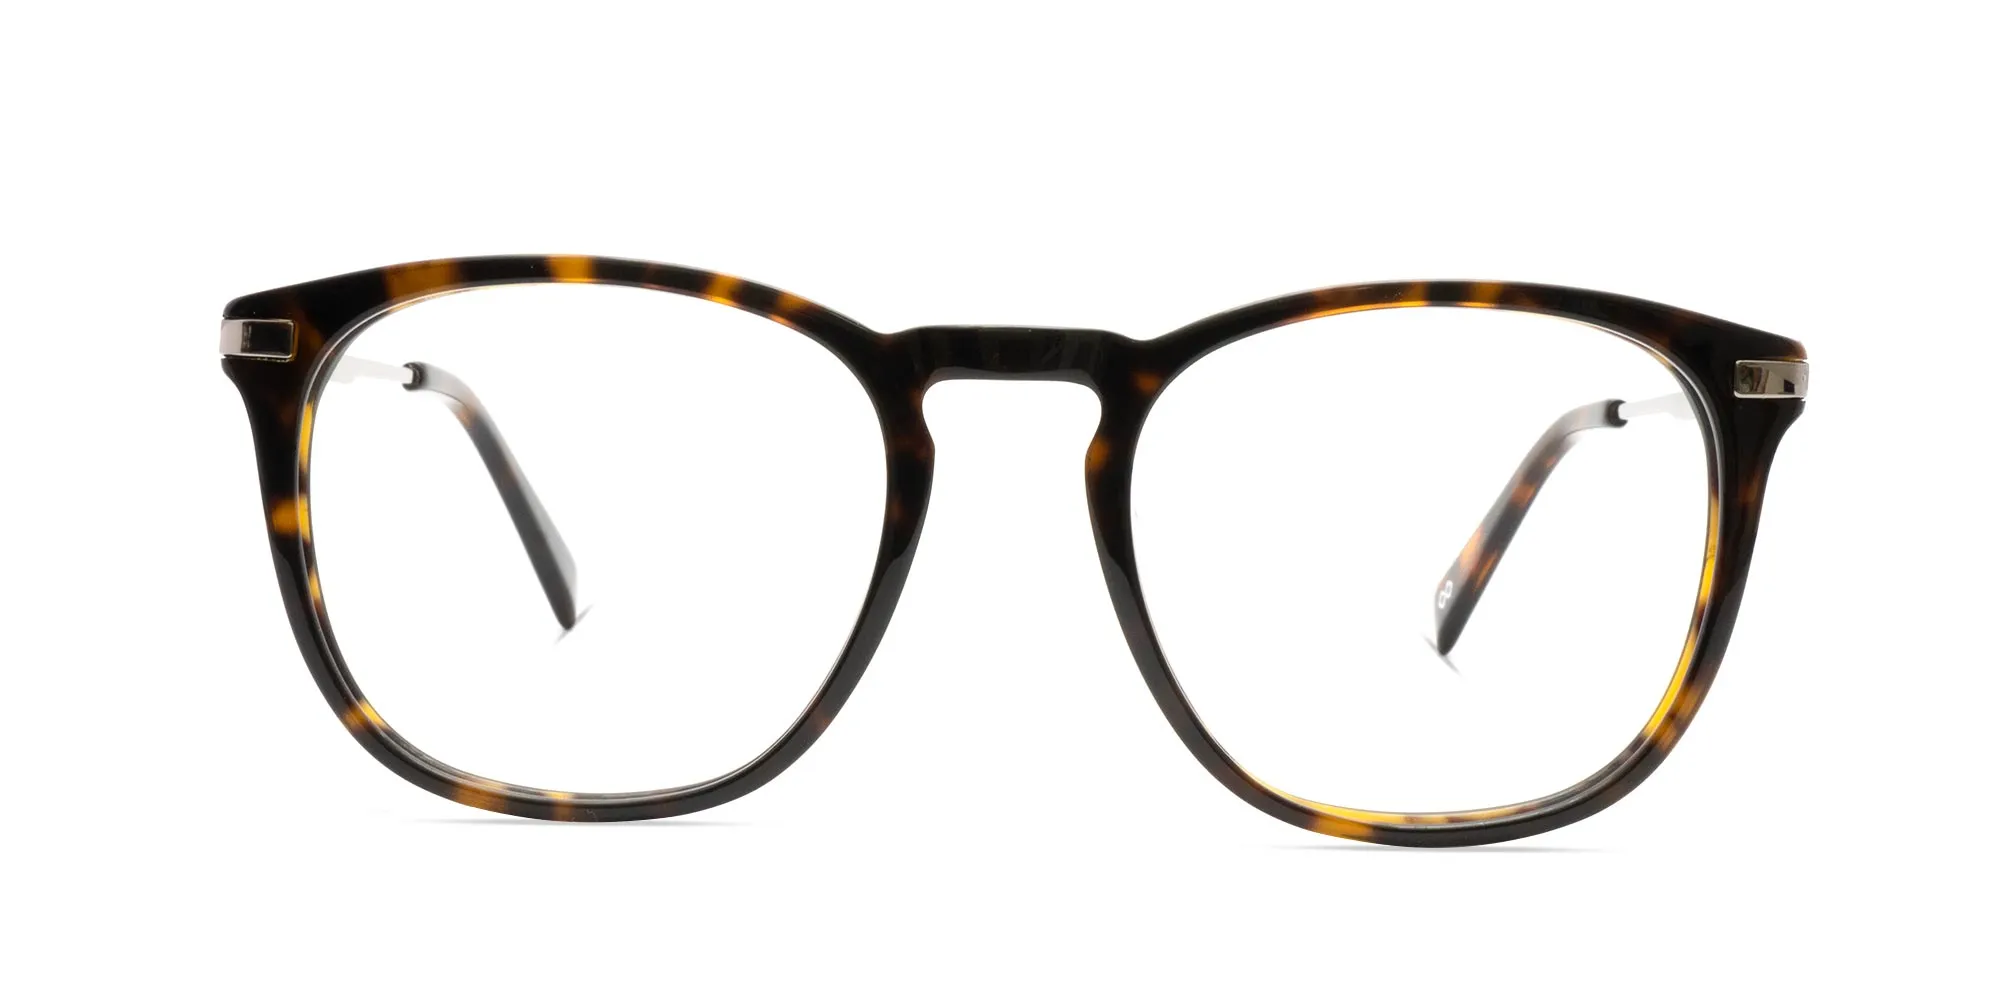 Havana & Tortoise Frame Glasses For Men & Women